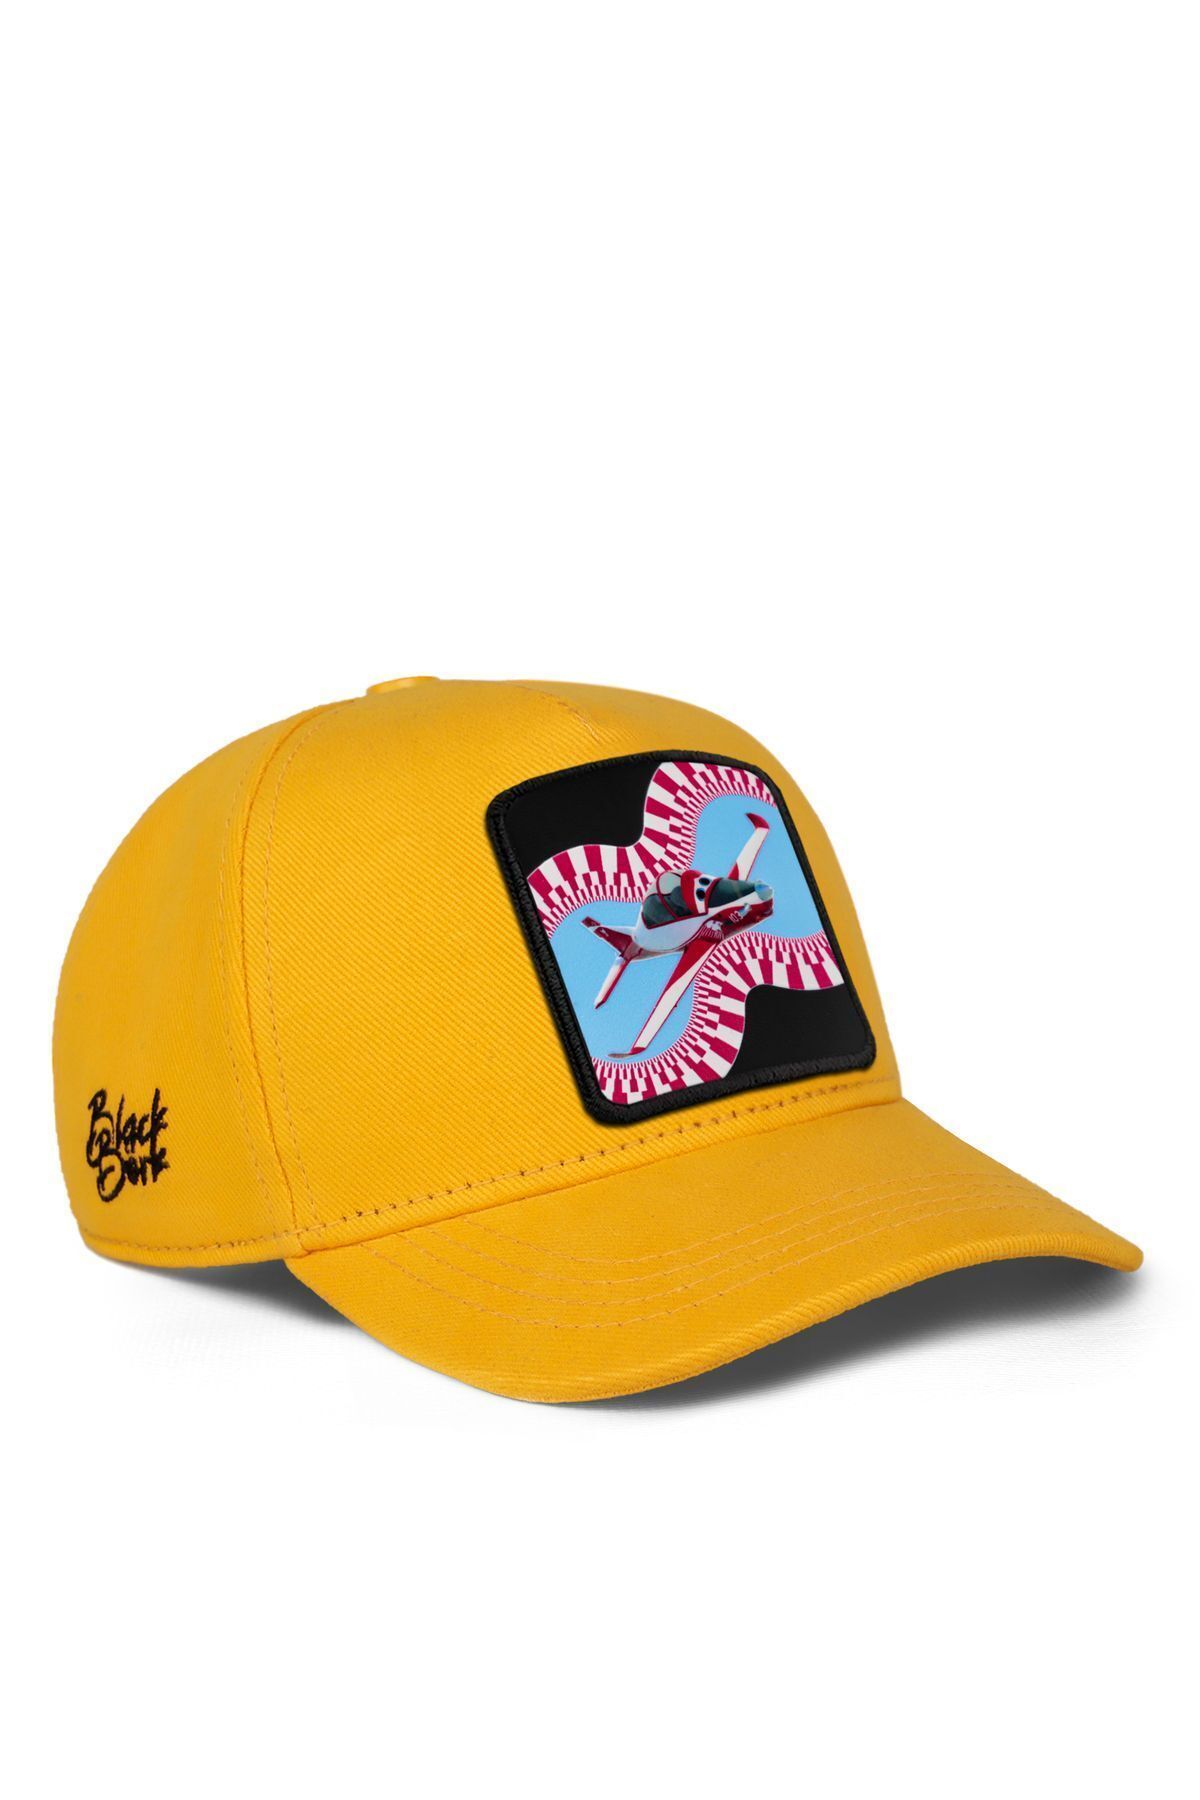 BlackBörk V1 Baseball Akış Hürkuş Lisanlı Sarı Çocuk Şapka